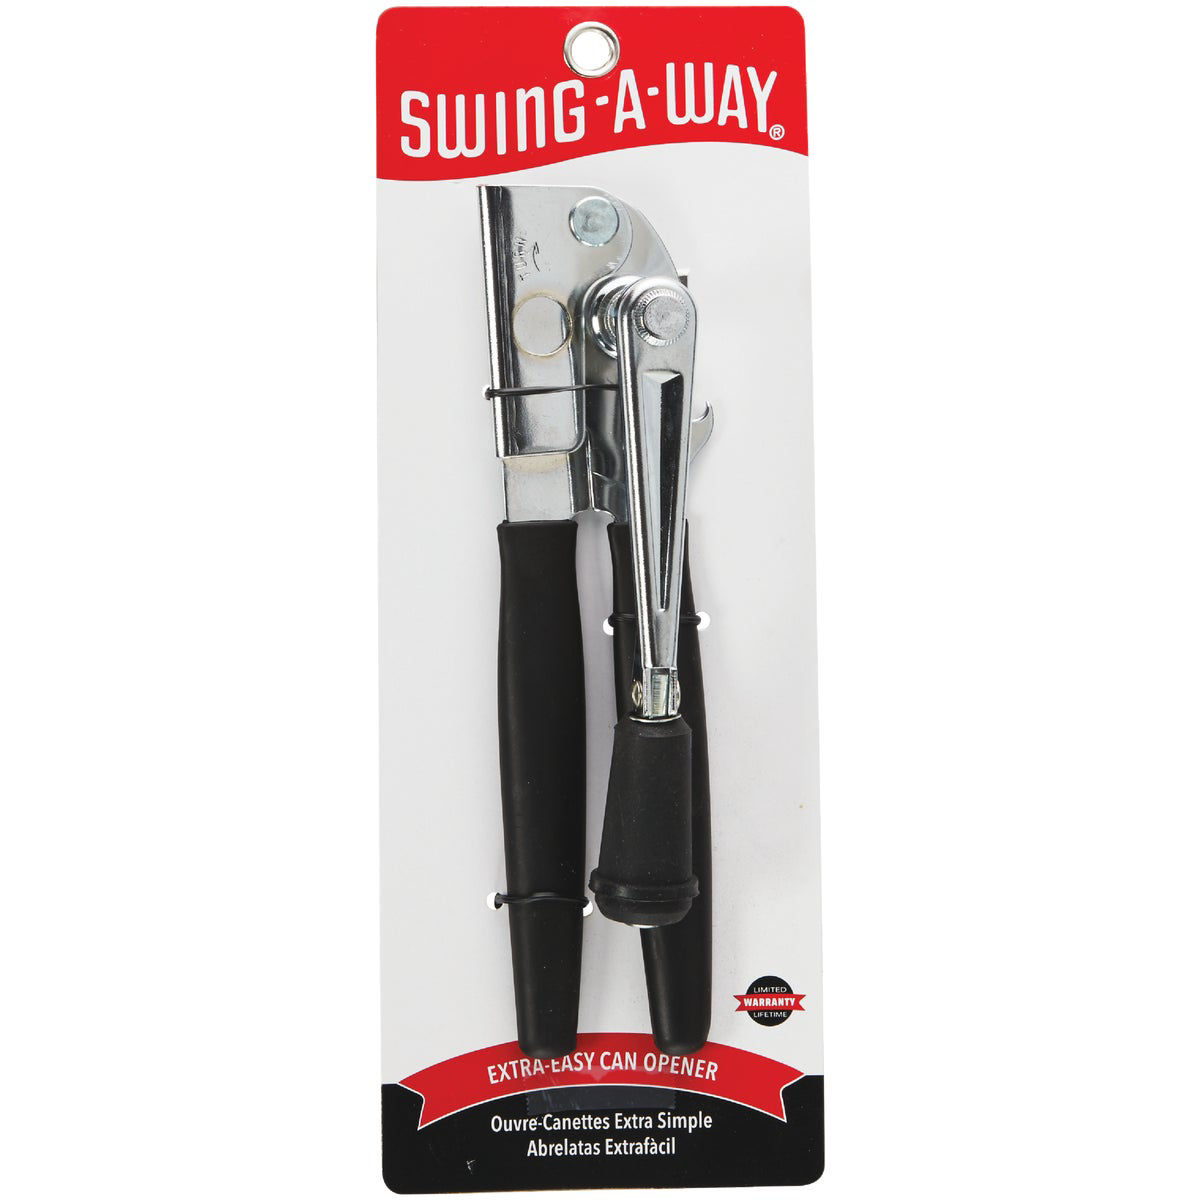 Swing-a-way Easy Crank Can Opener Comfort Grip, Built In Bottle Opener,  Gray : Target